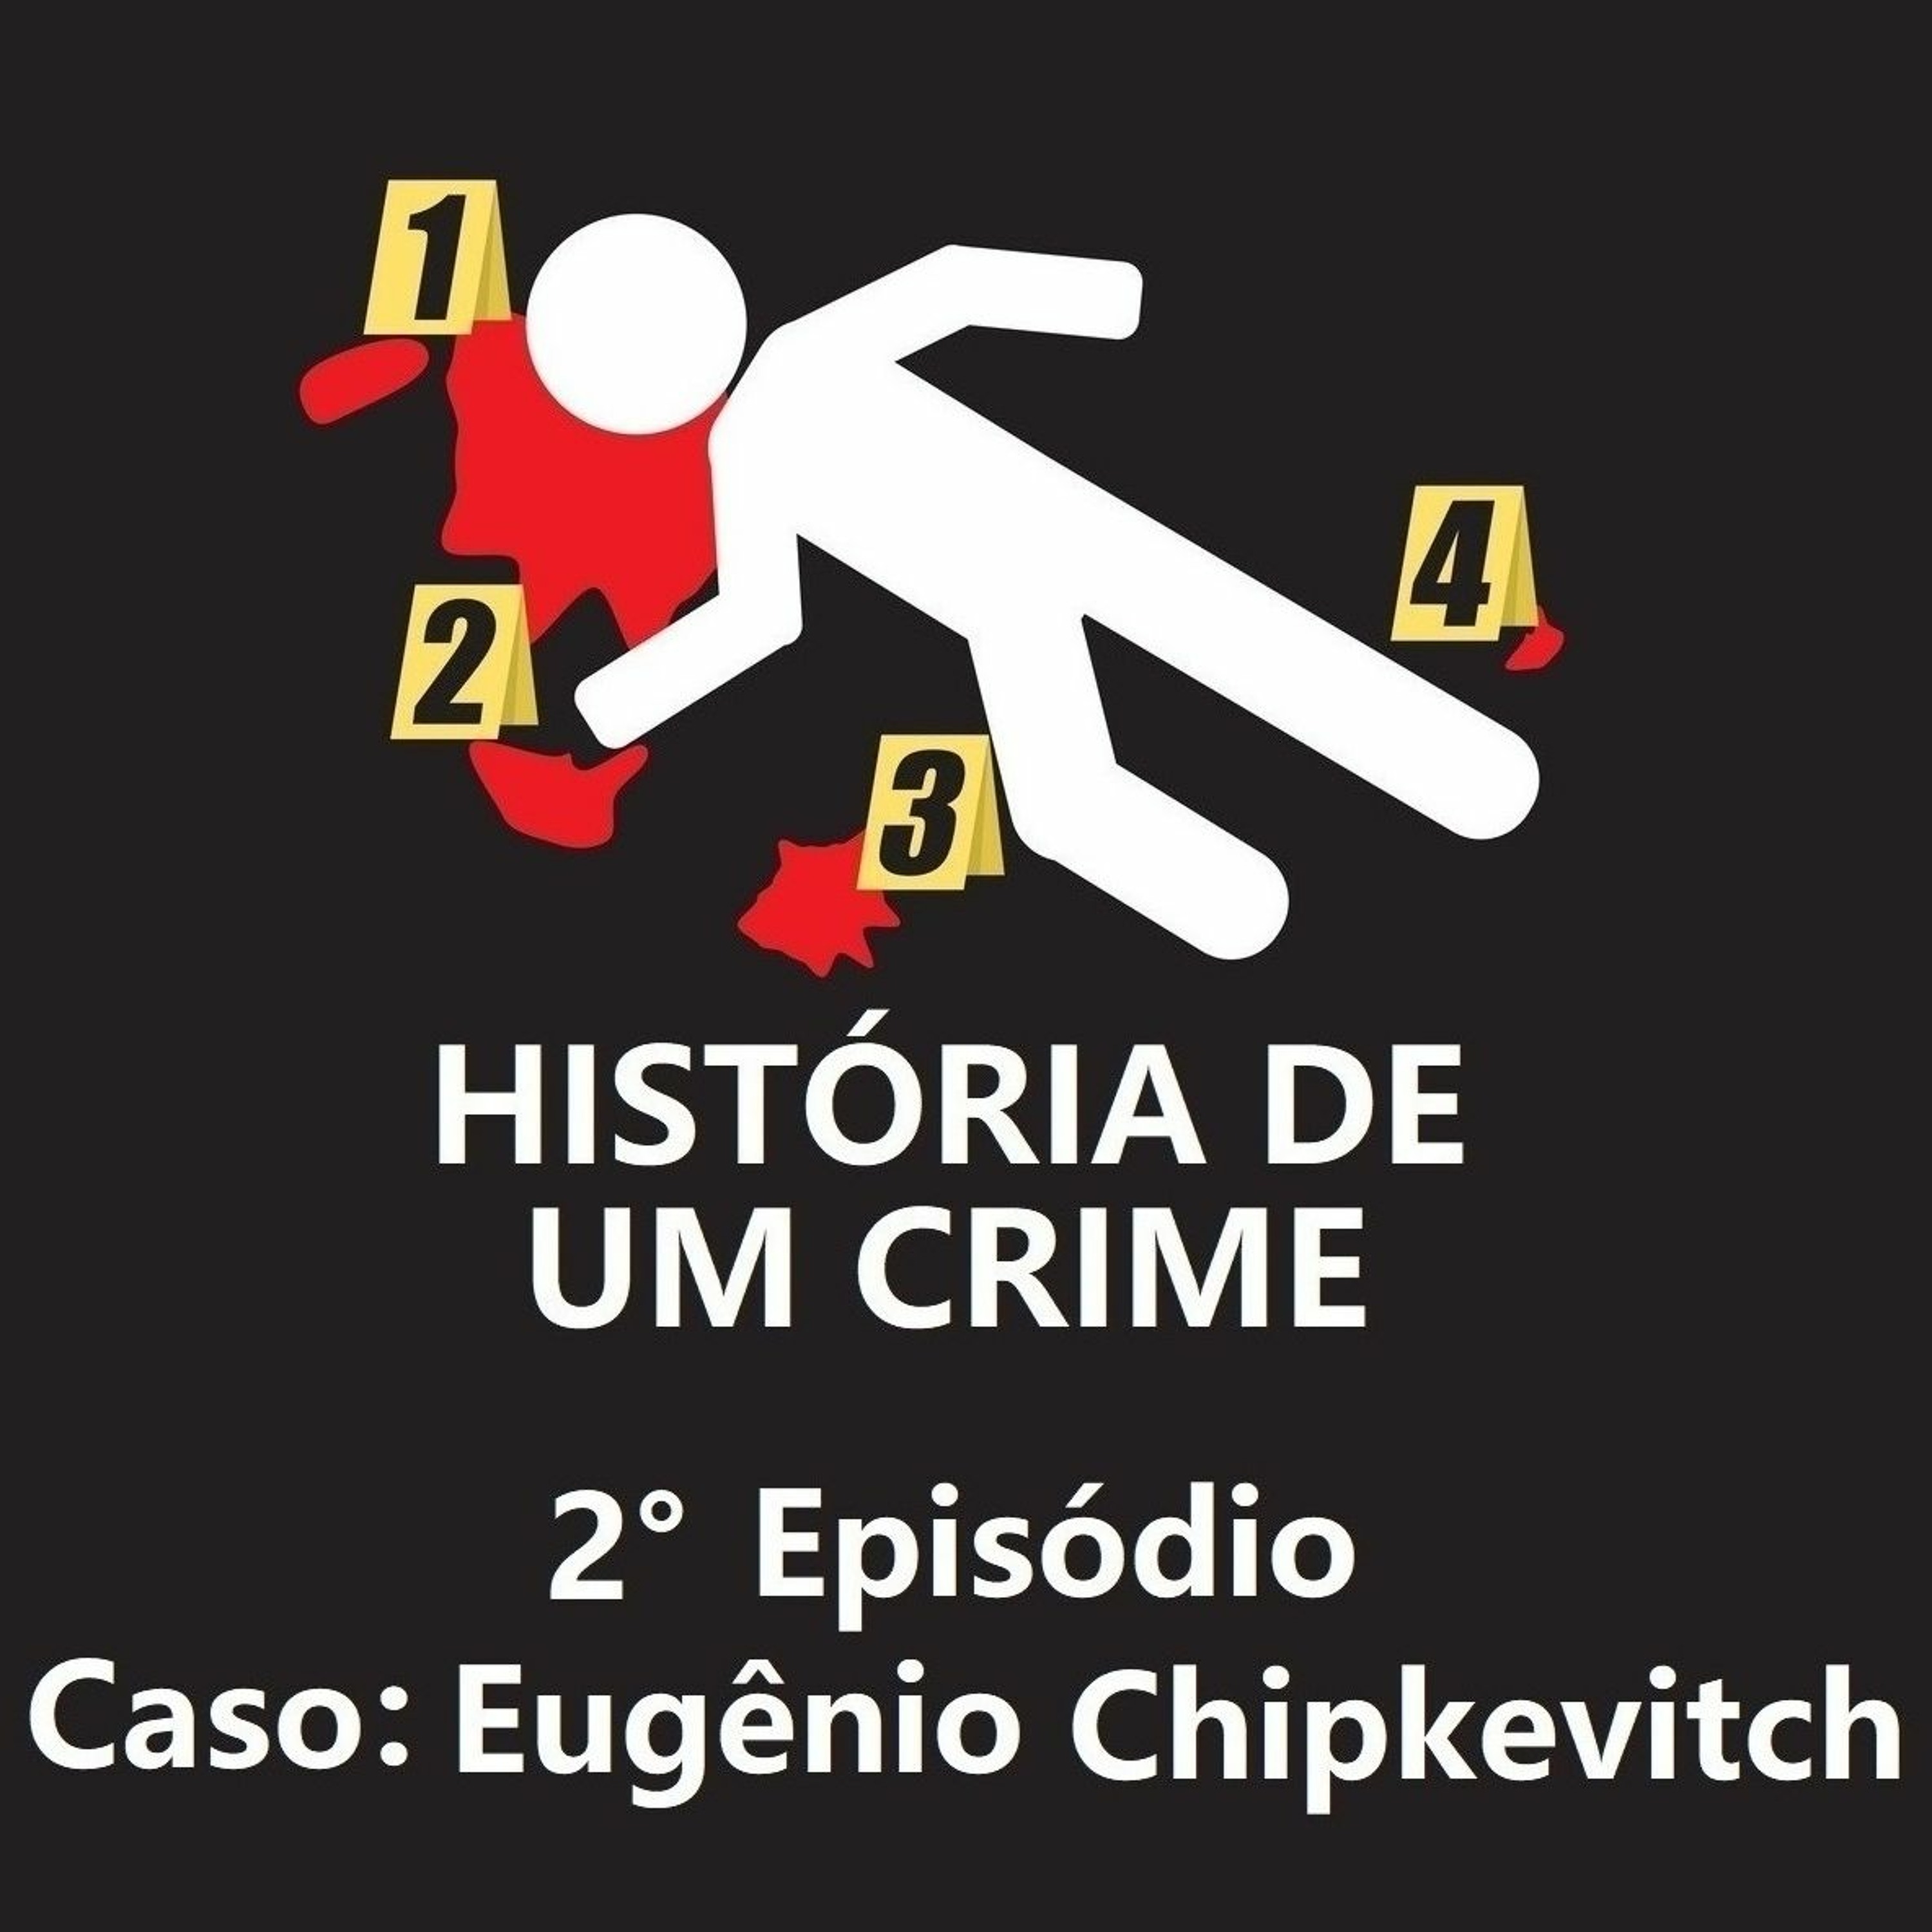 2º EPISÓDIO - Eugênio Chipkevitch